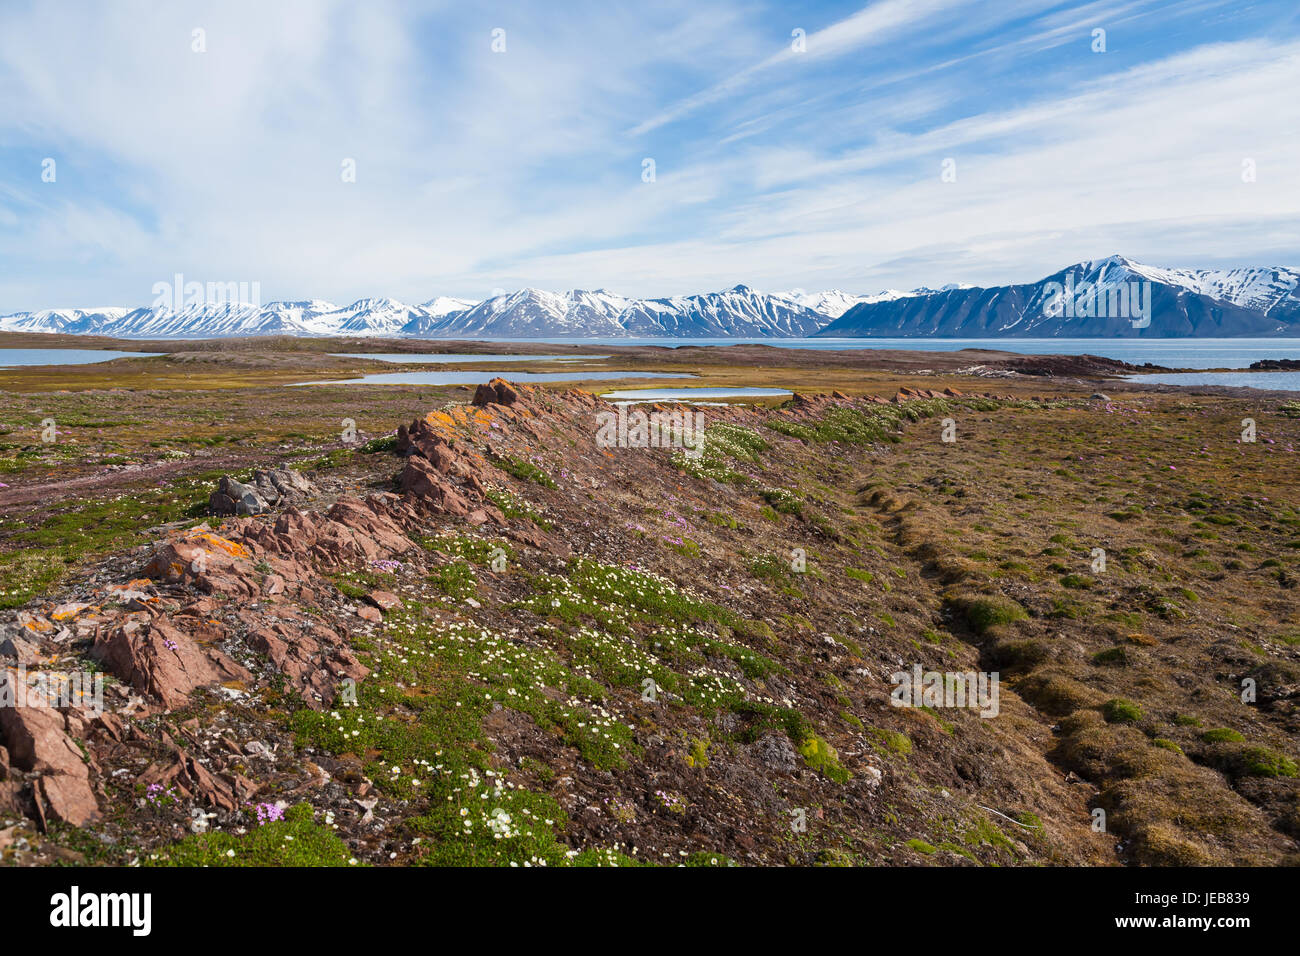 Un costone di roccia inclinato e le curve round in una baia vicino Makeøyane in Spitzbergen. Cuscini di piccoli fiori selvaggi crescono nel suo rifugio. Foto Stock